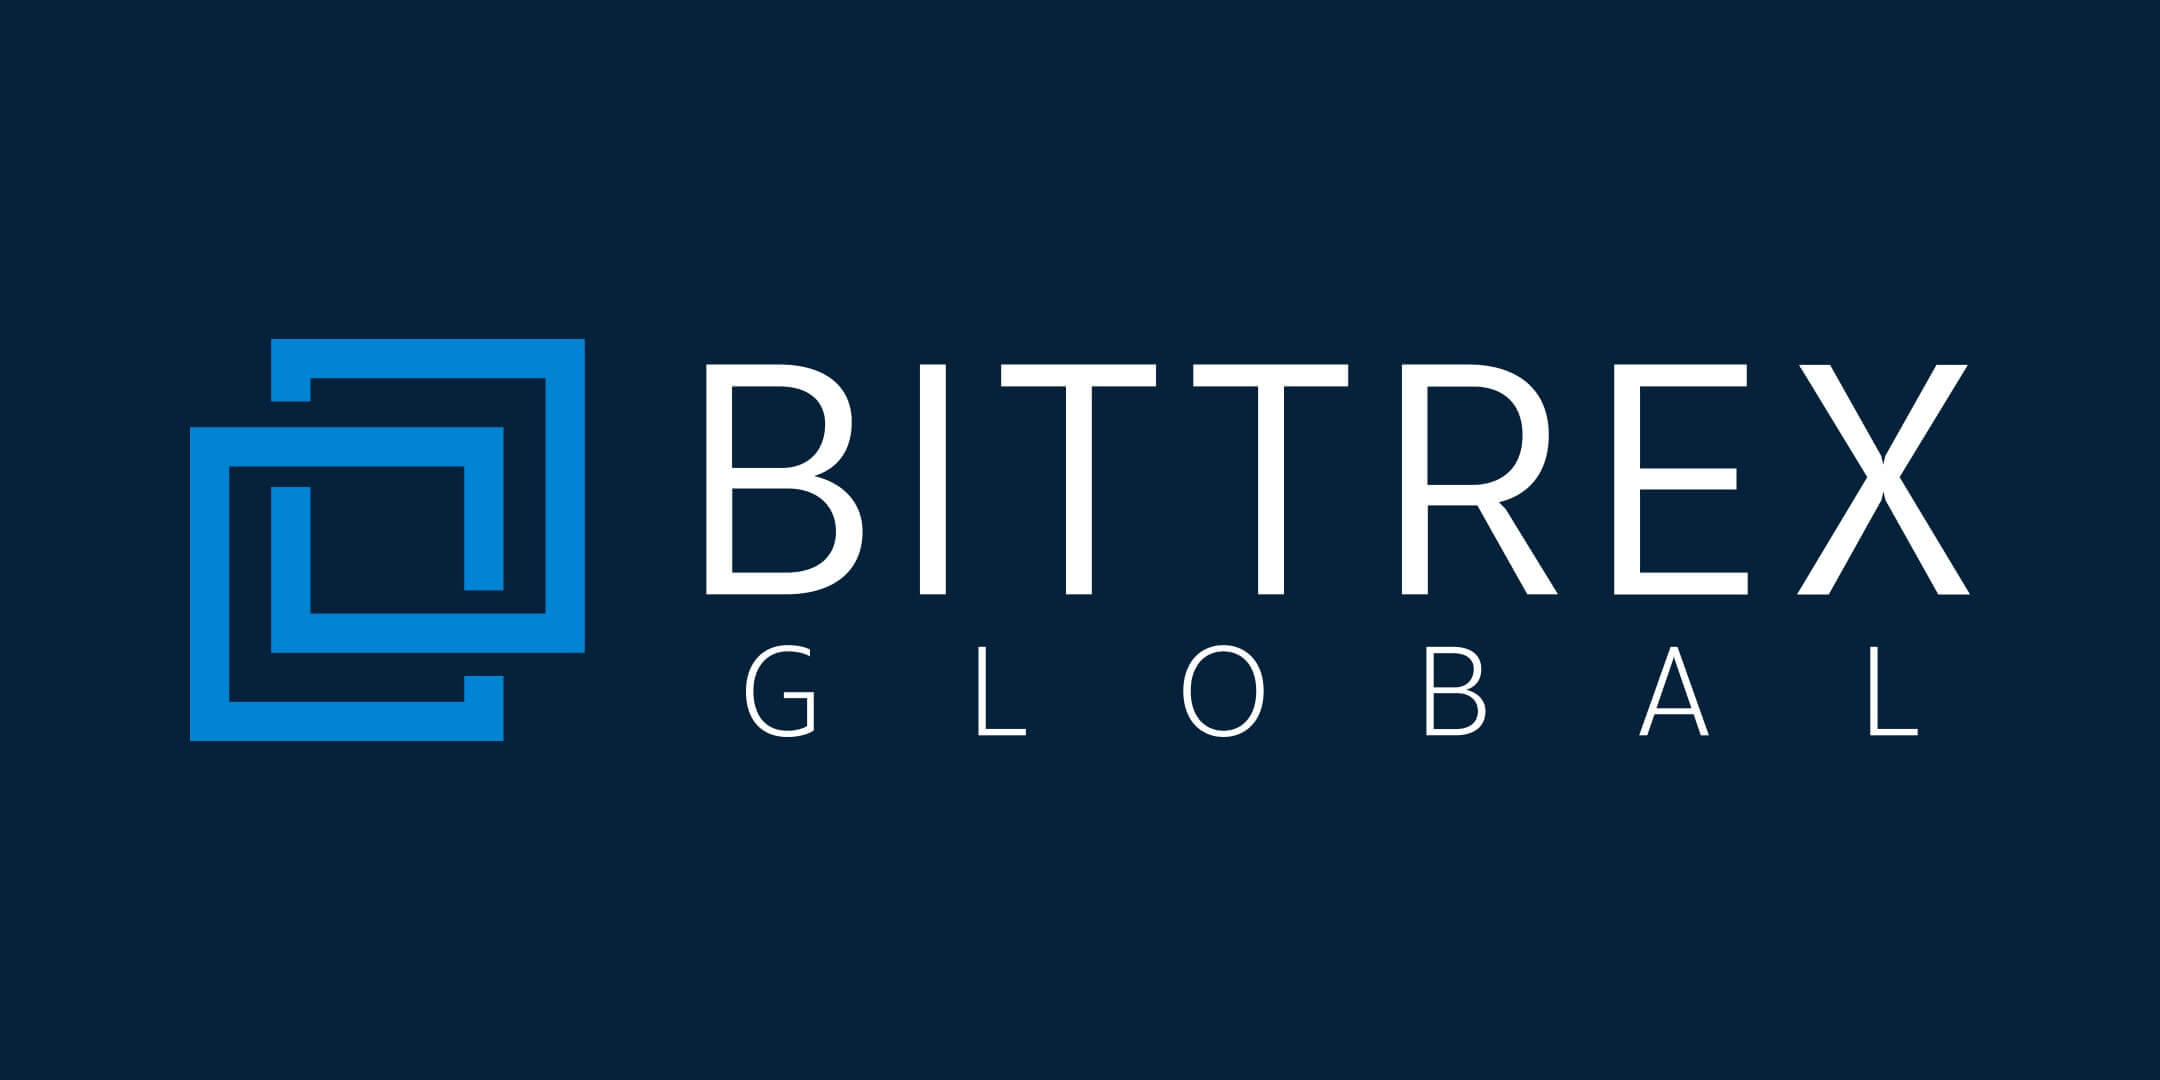 Bittrex là sàn giao dịch được xây dựng trên hệ thống pháp luật của Hoa Kỳ